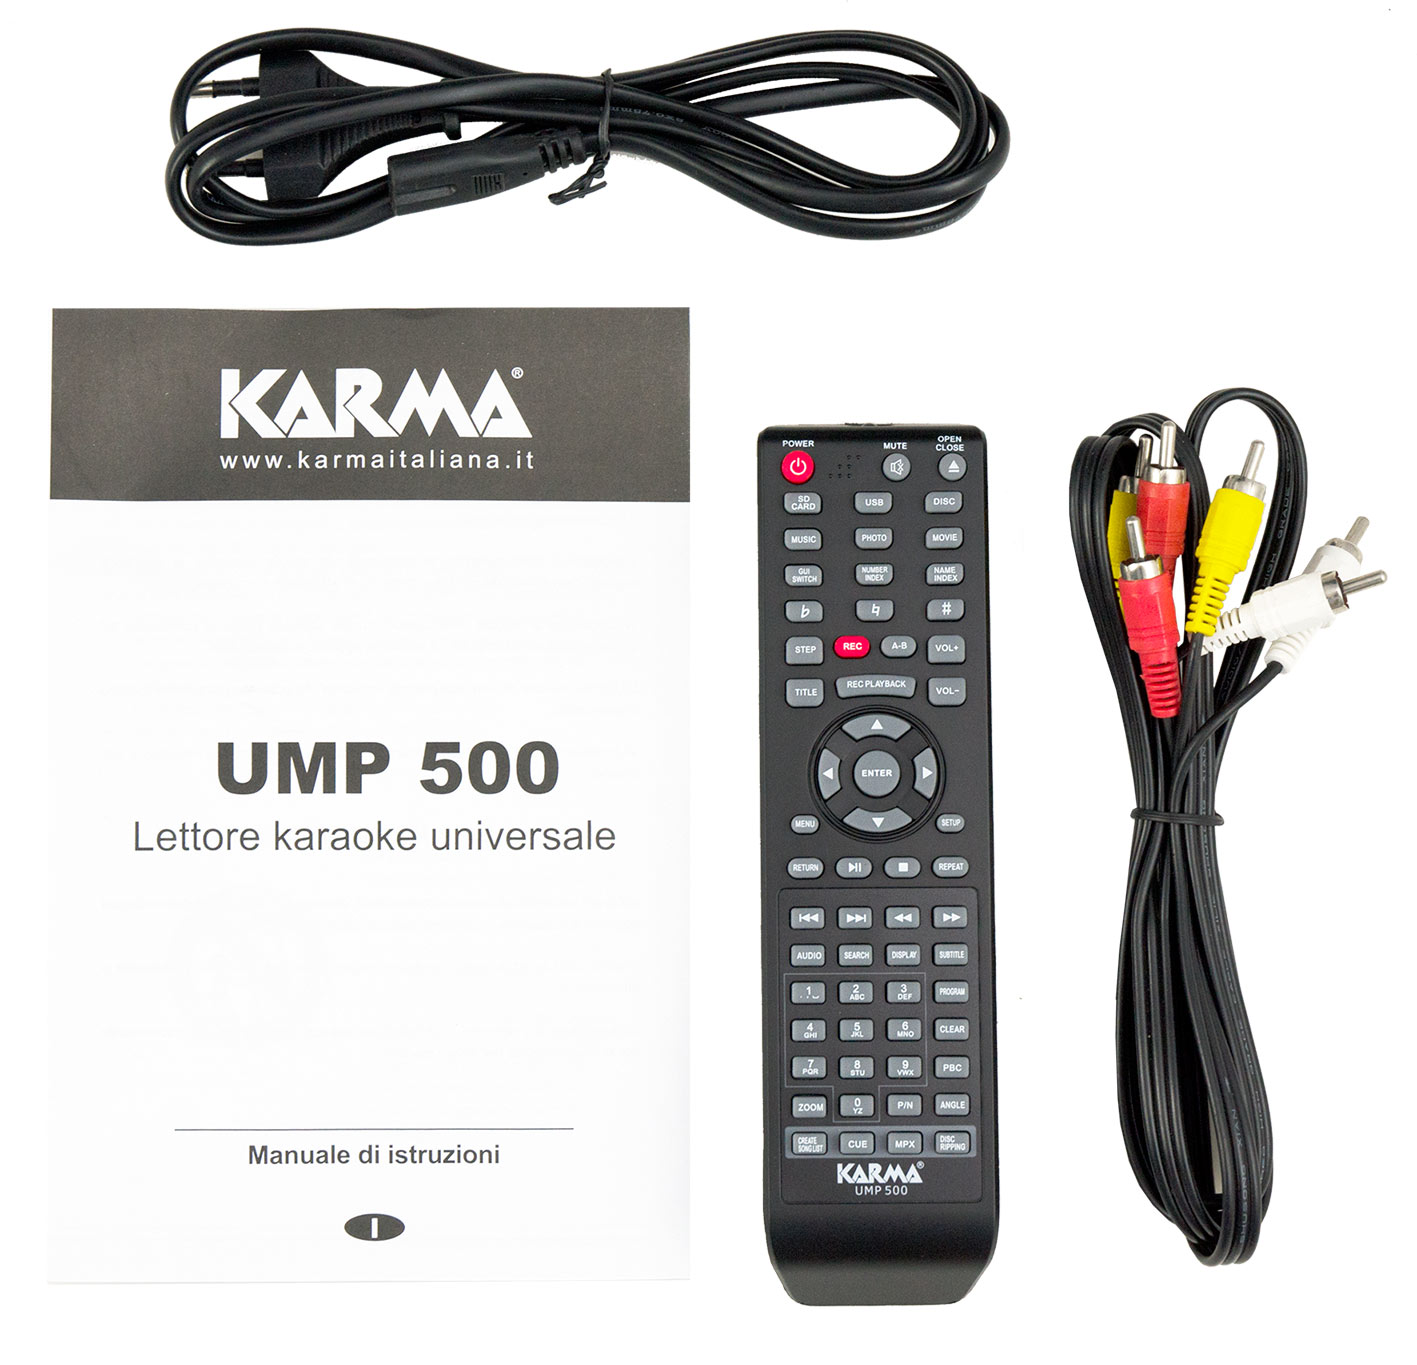 Karma UMP 500